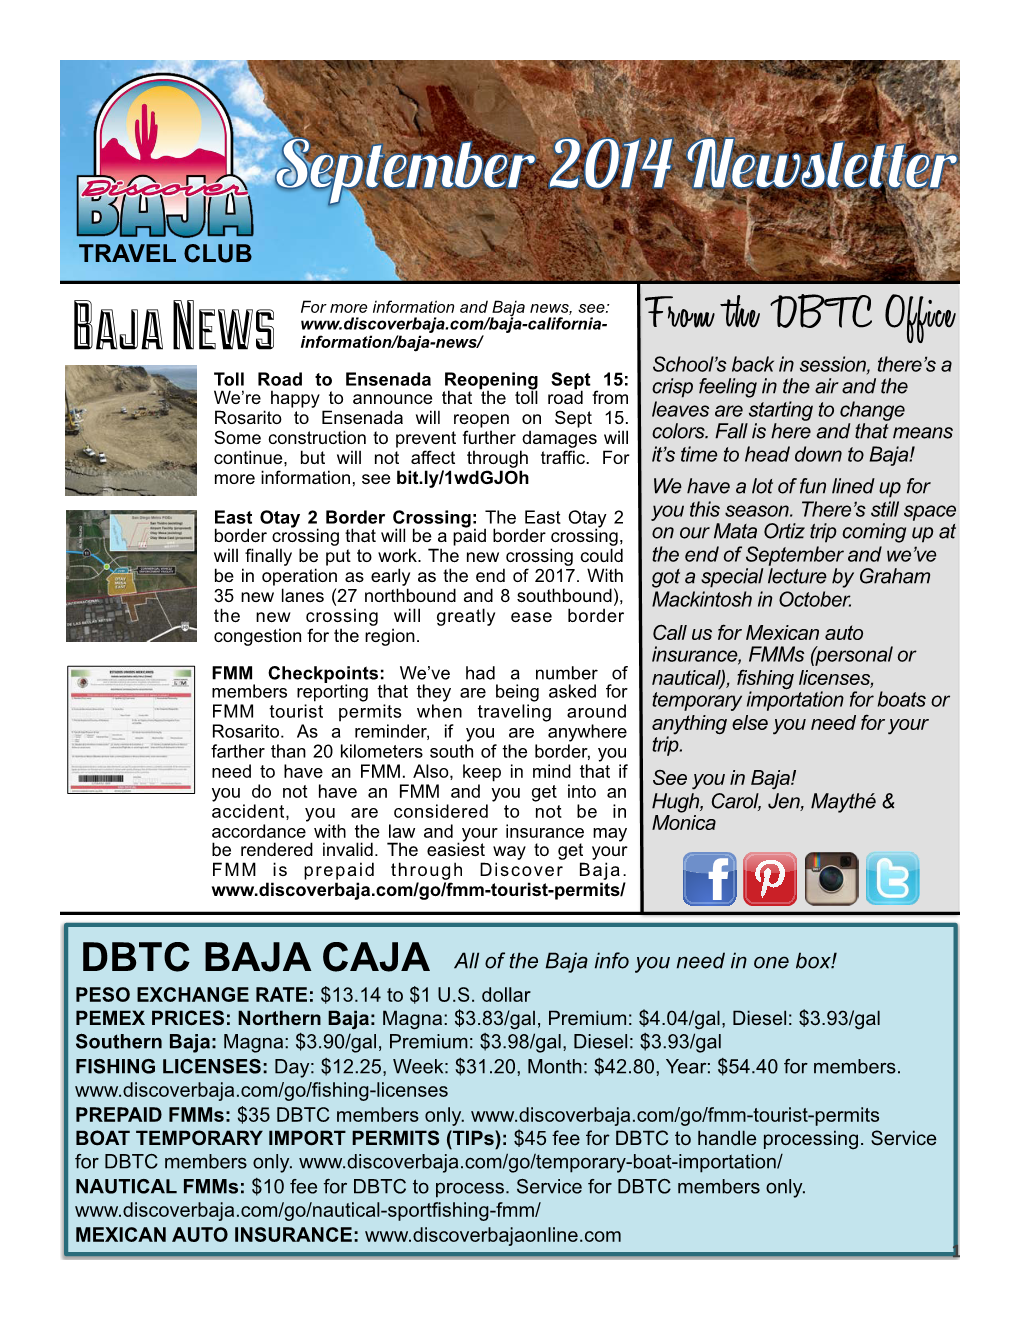 September Newsletter.Pptx